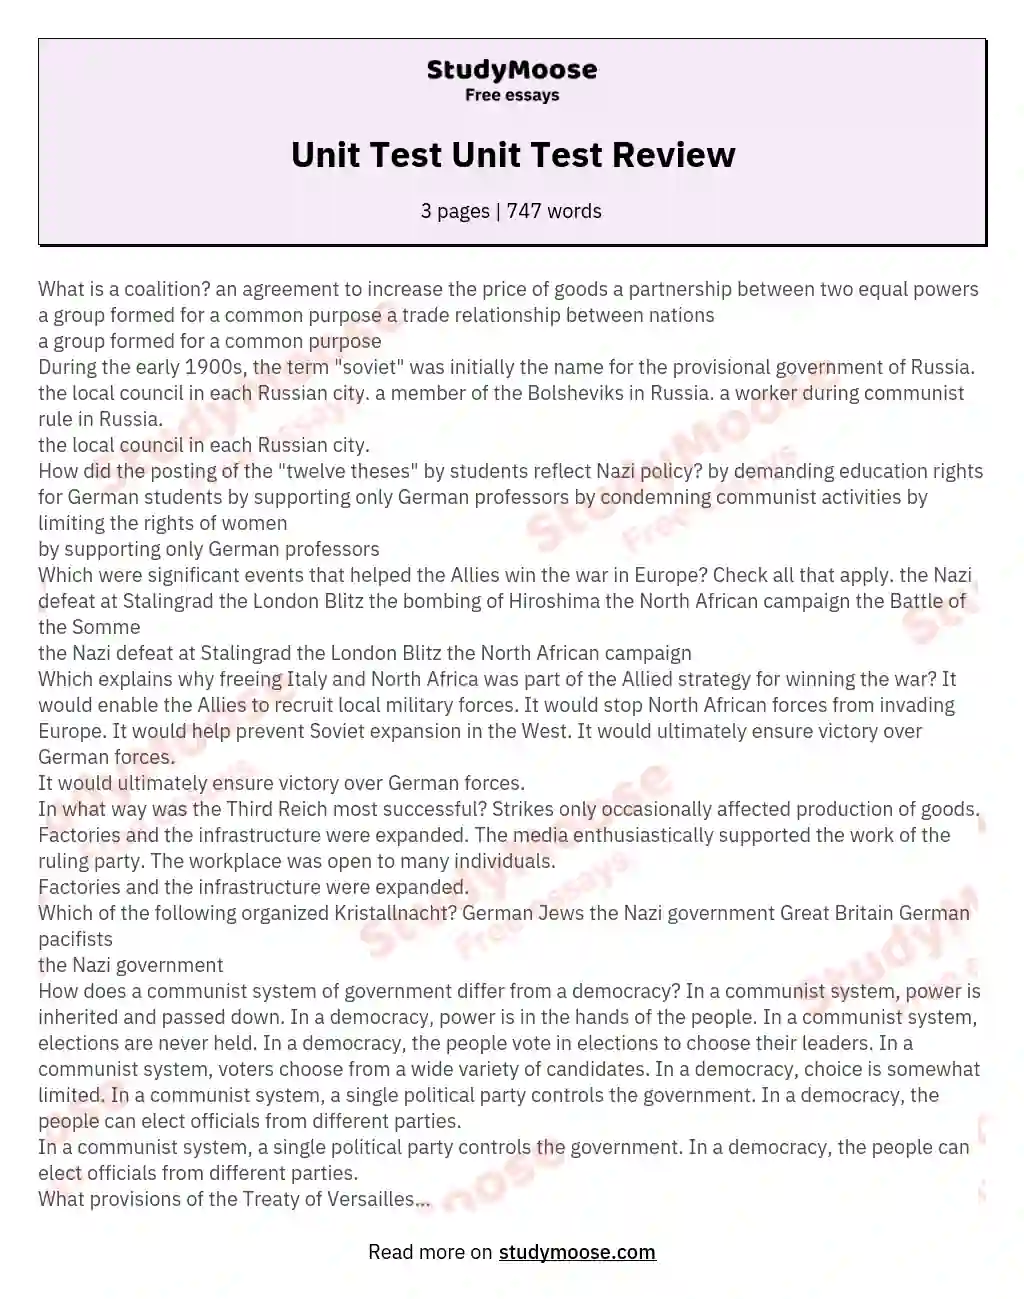 Unit Test Unit Test Review essay